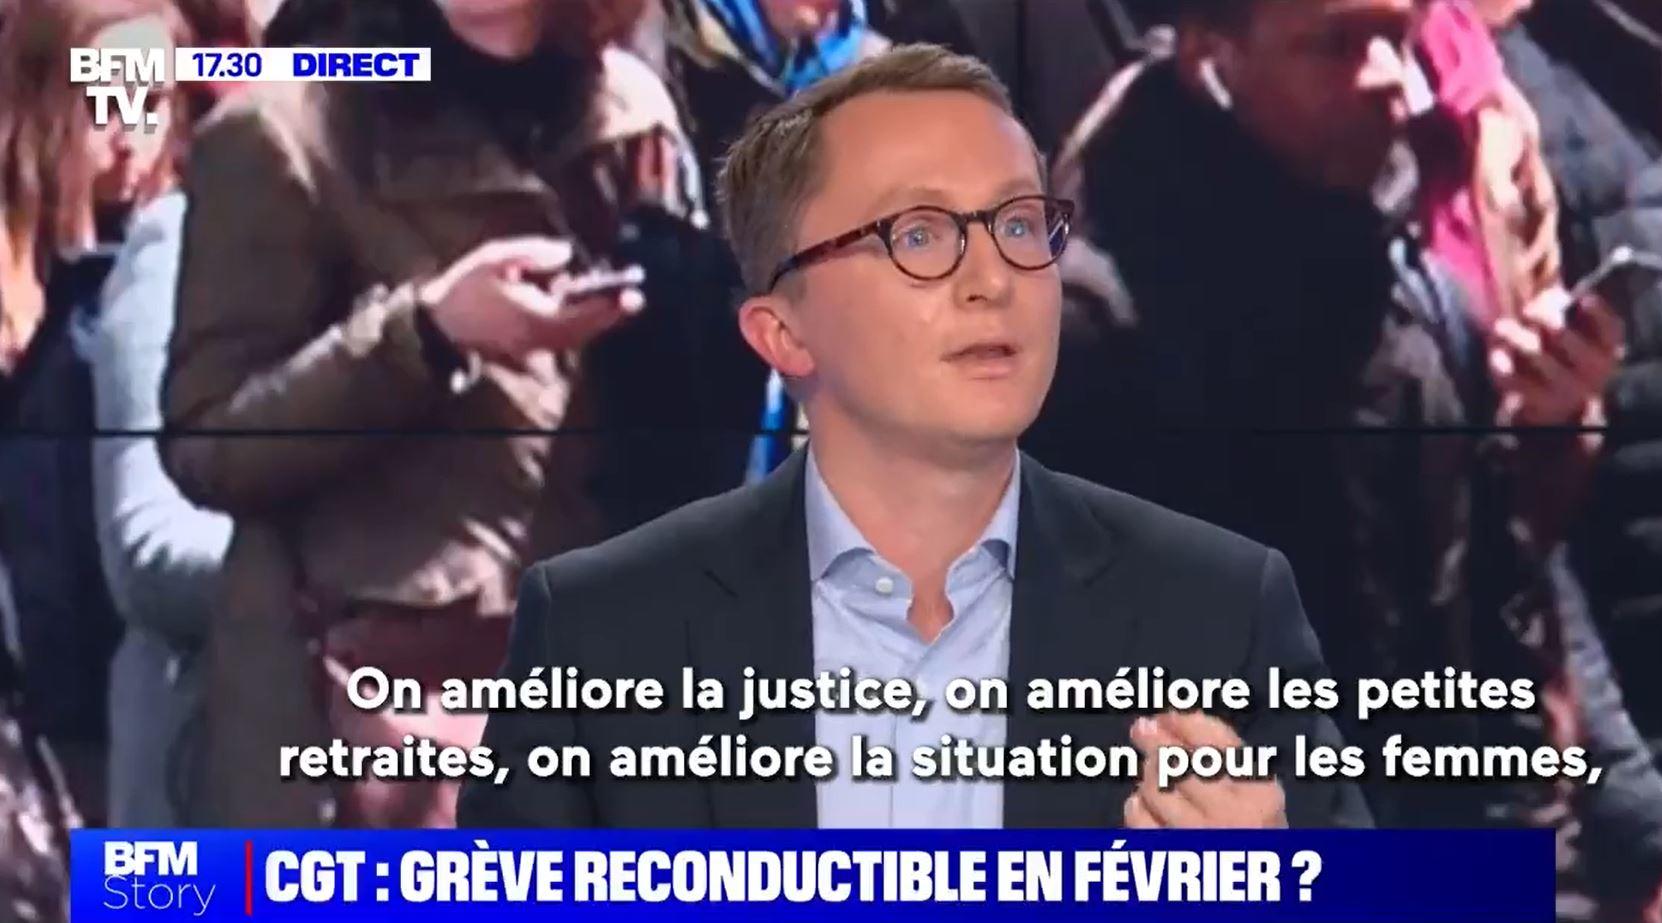 De jeunes parlementaires vont défendre la réforme des retraites sur les plateaux télé, comme le fait ici Paul Midy, député de l'Essonne. Capture d'écran BFM TV